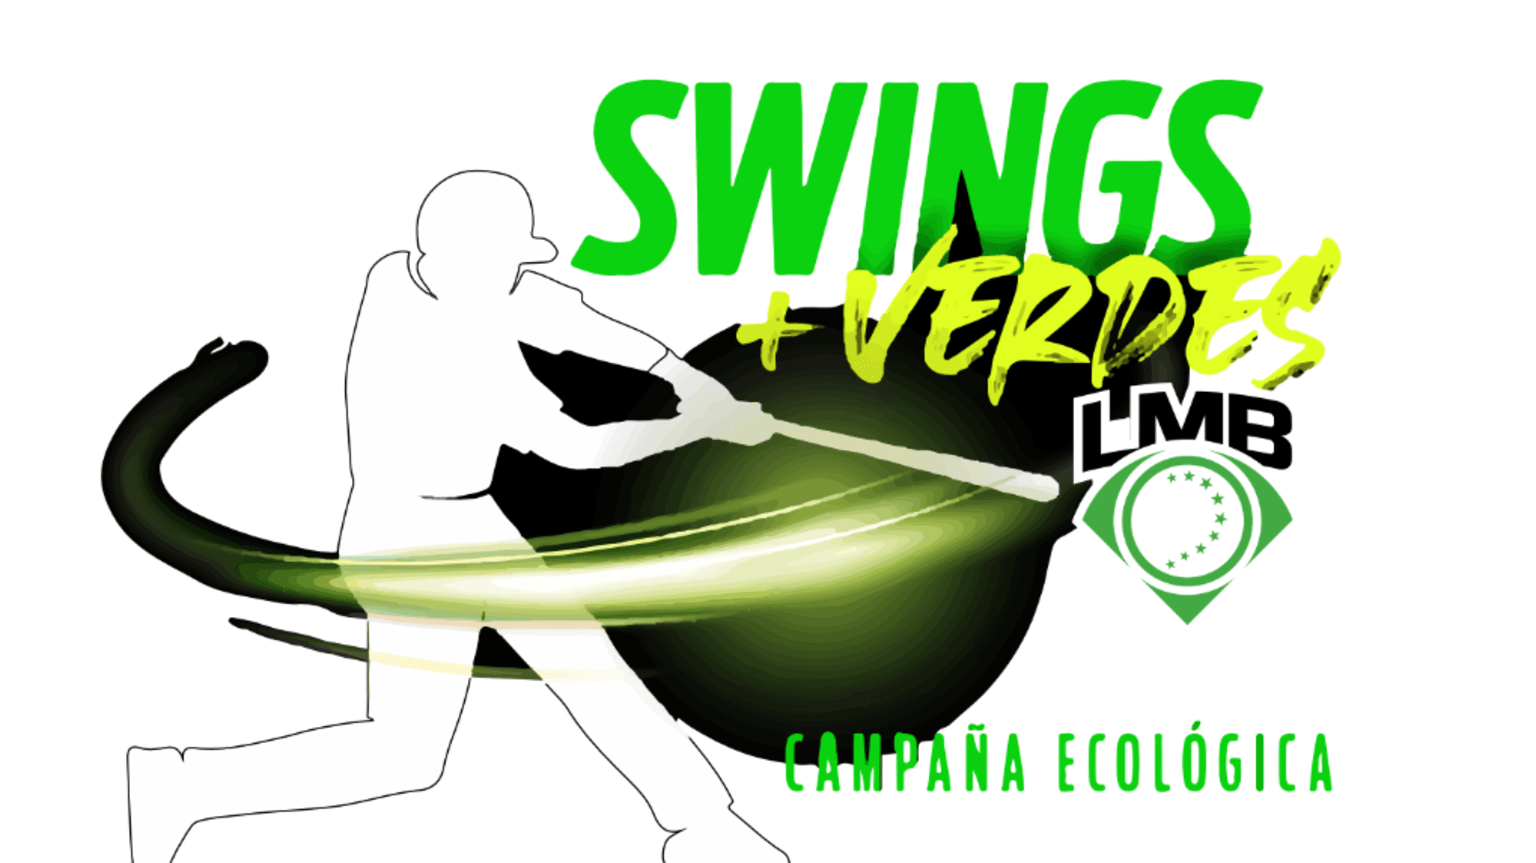 Swings + Verdes.